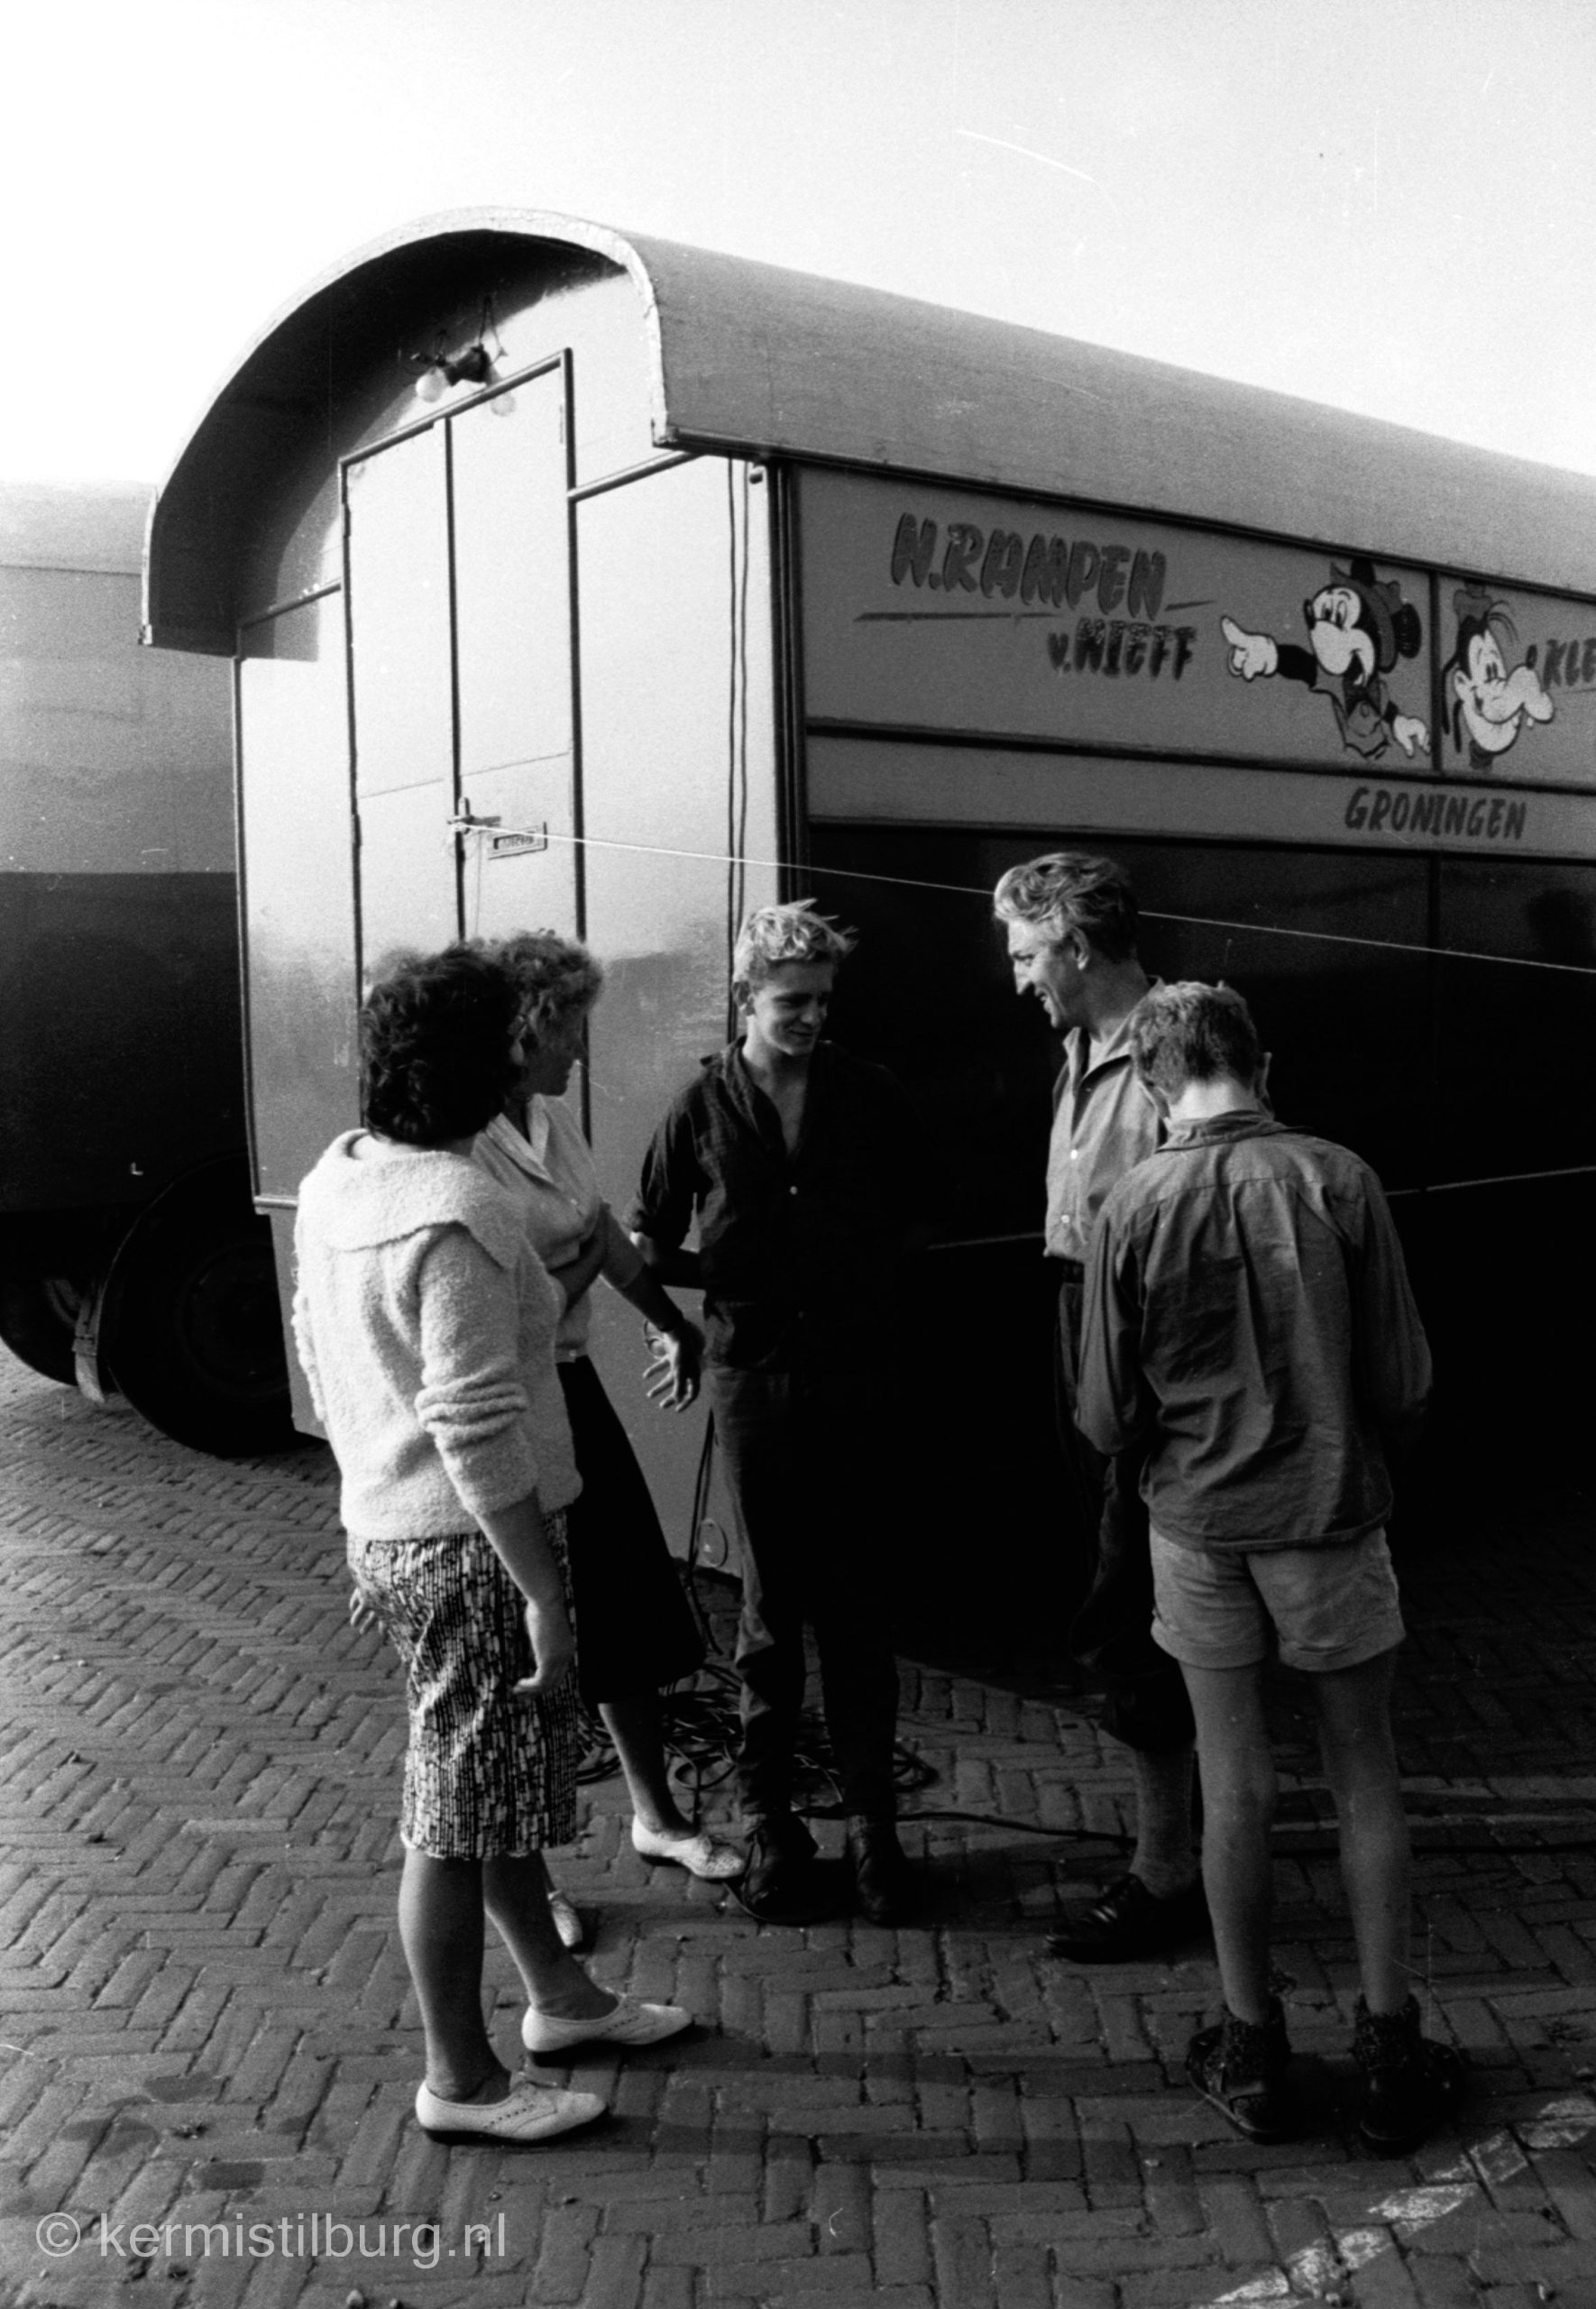 1961, Kermis, Tilburg, Tilburgse kermis, skc